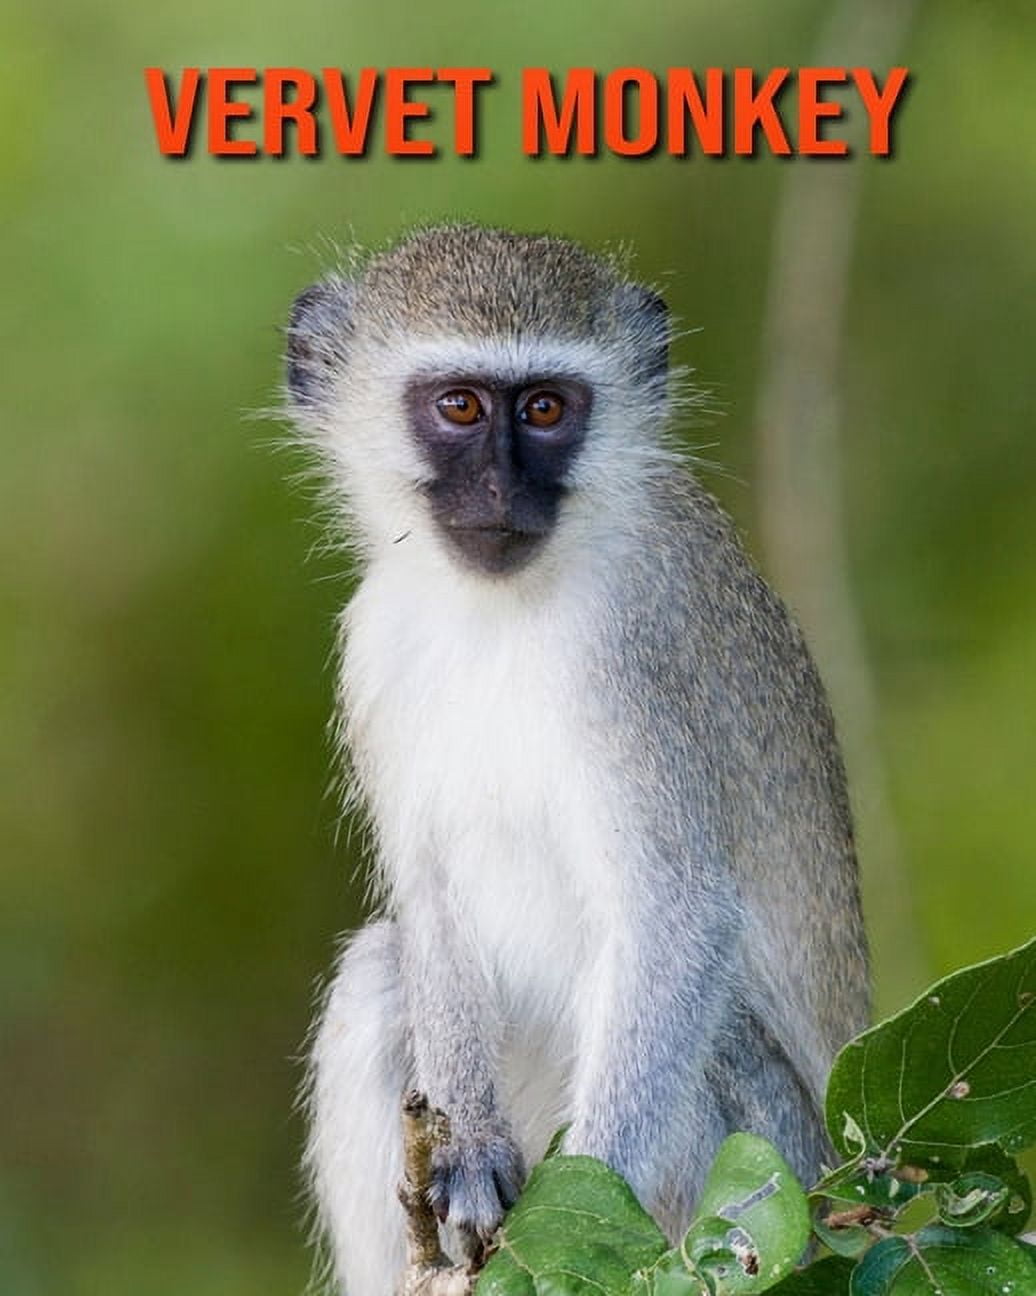 The Vervet Monkey